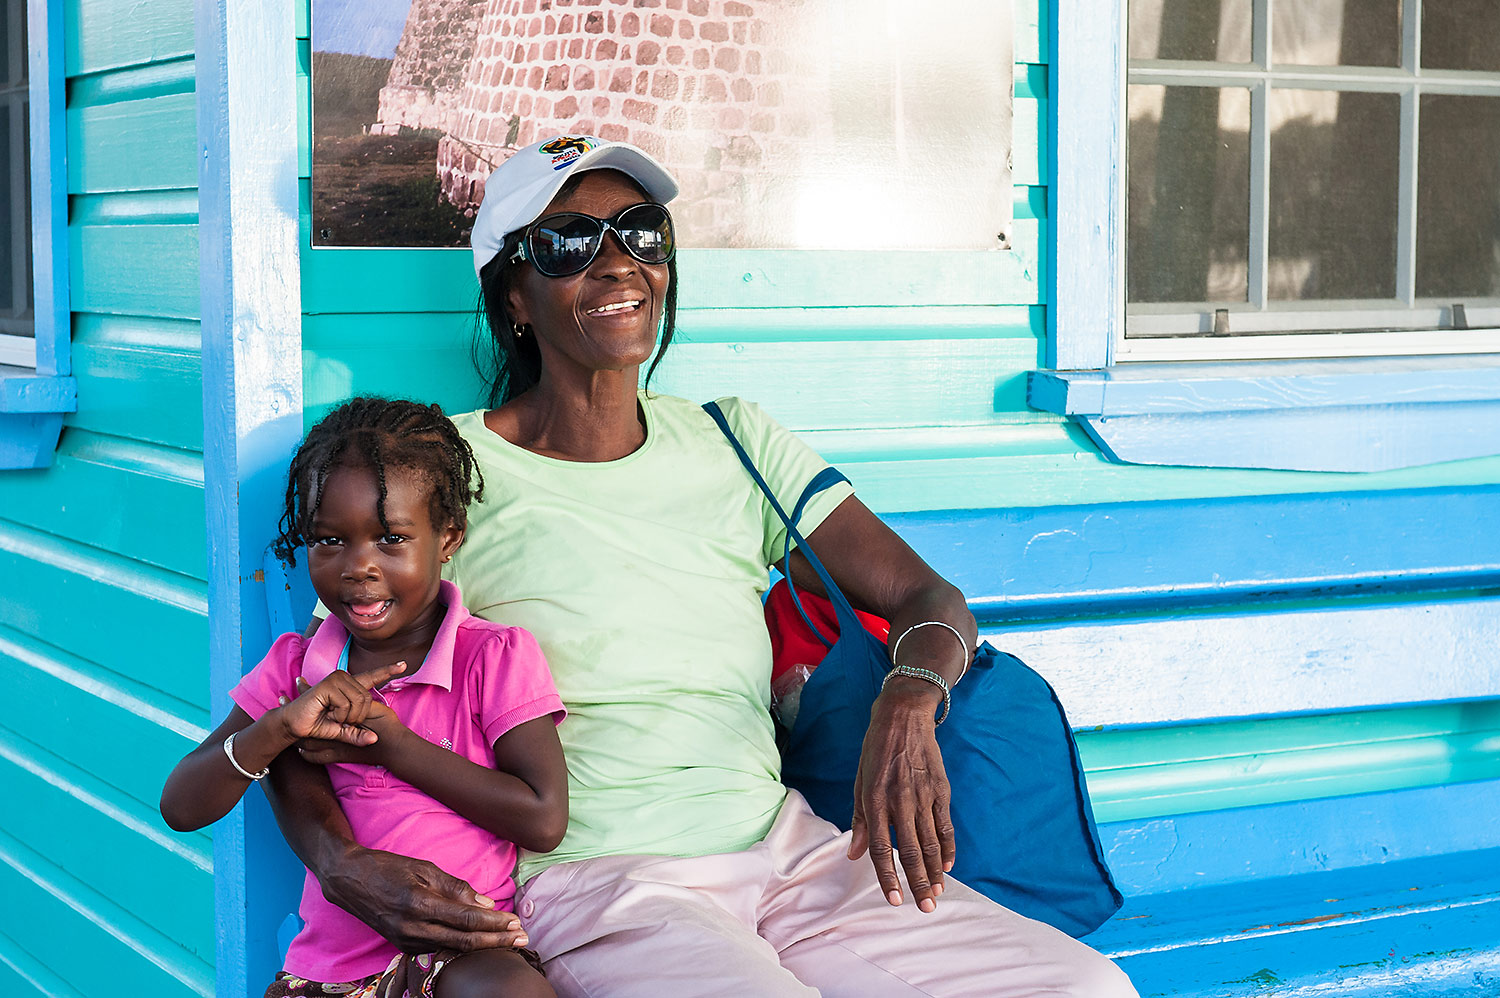 Farbige Frau mit Kind sitzt auf einer bunten Bank